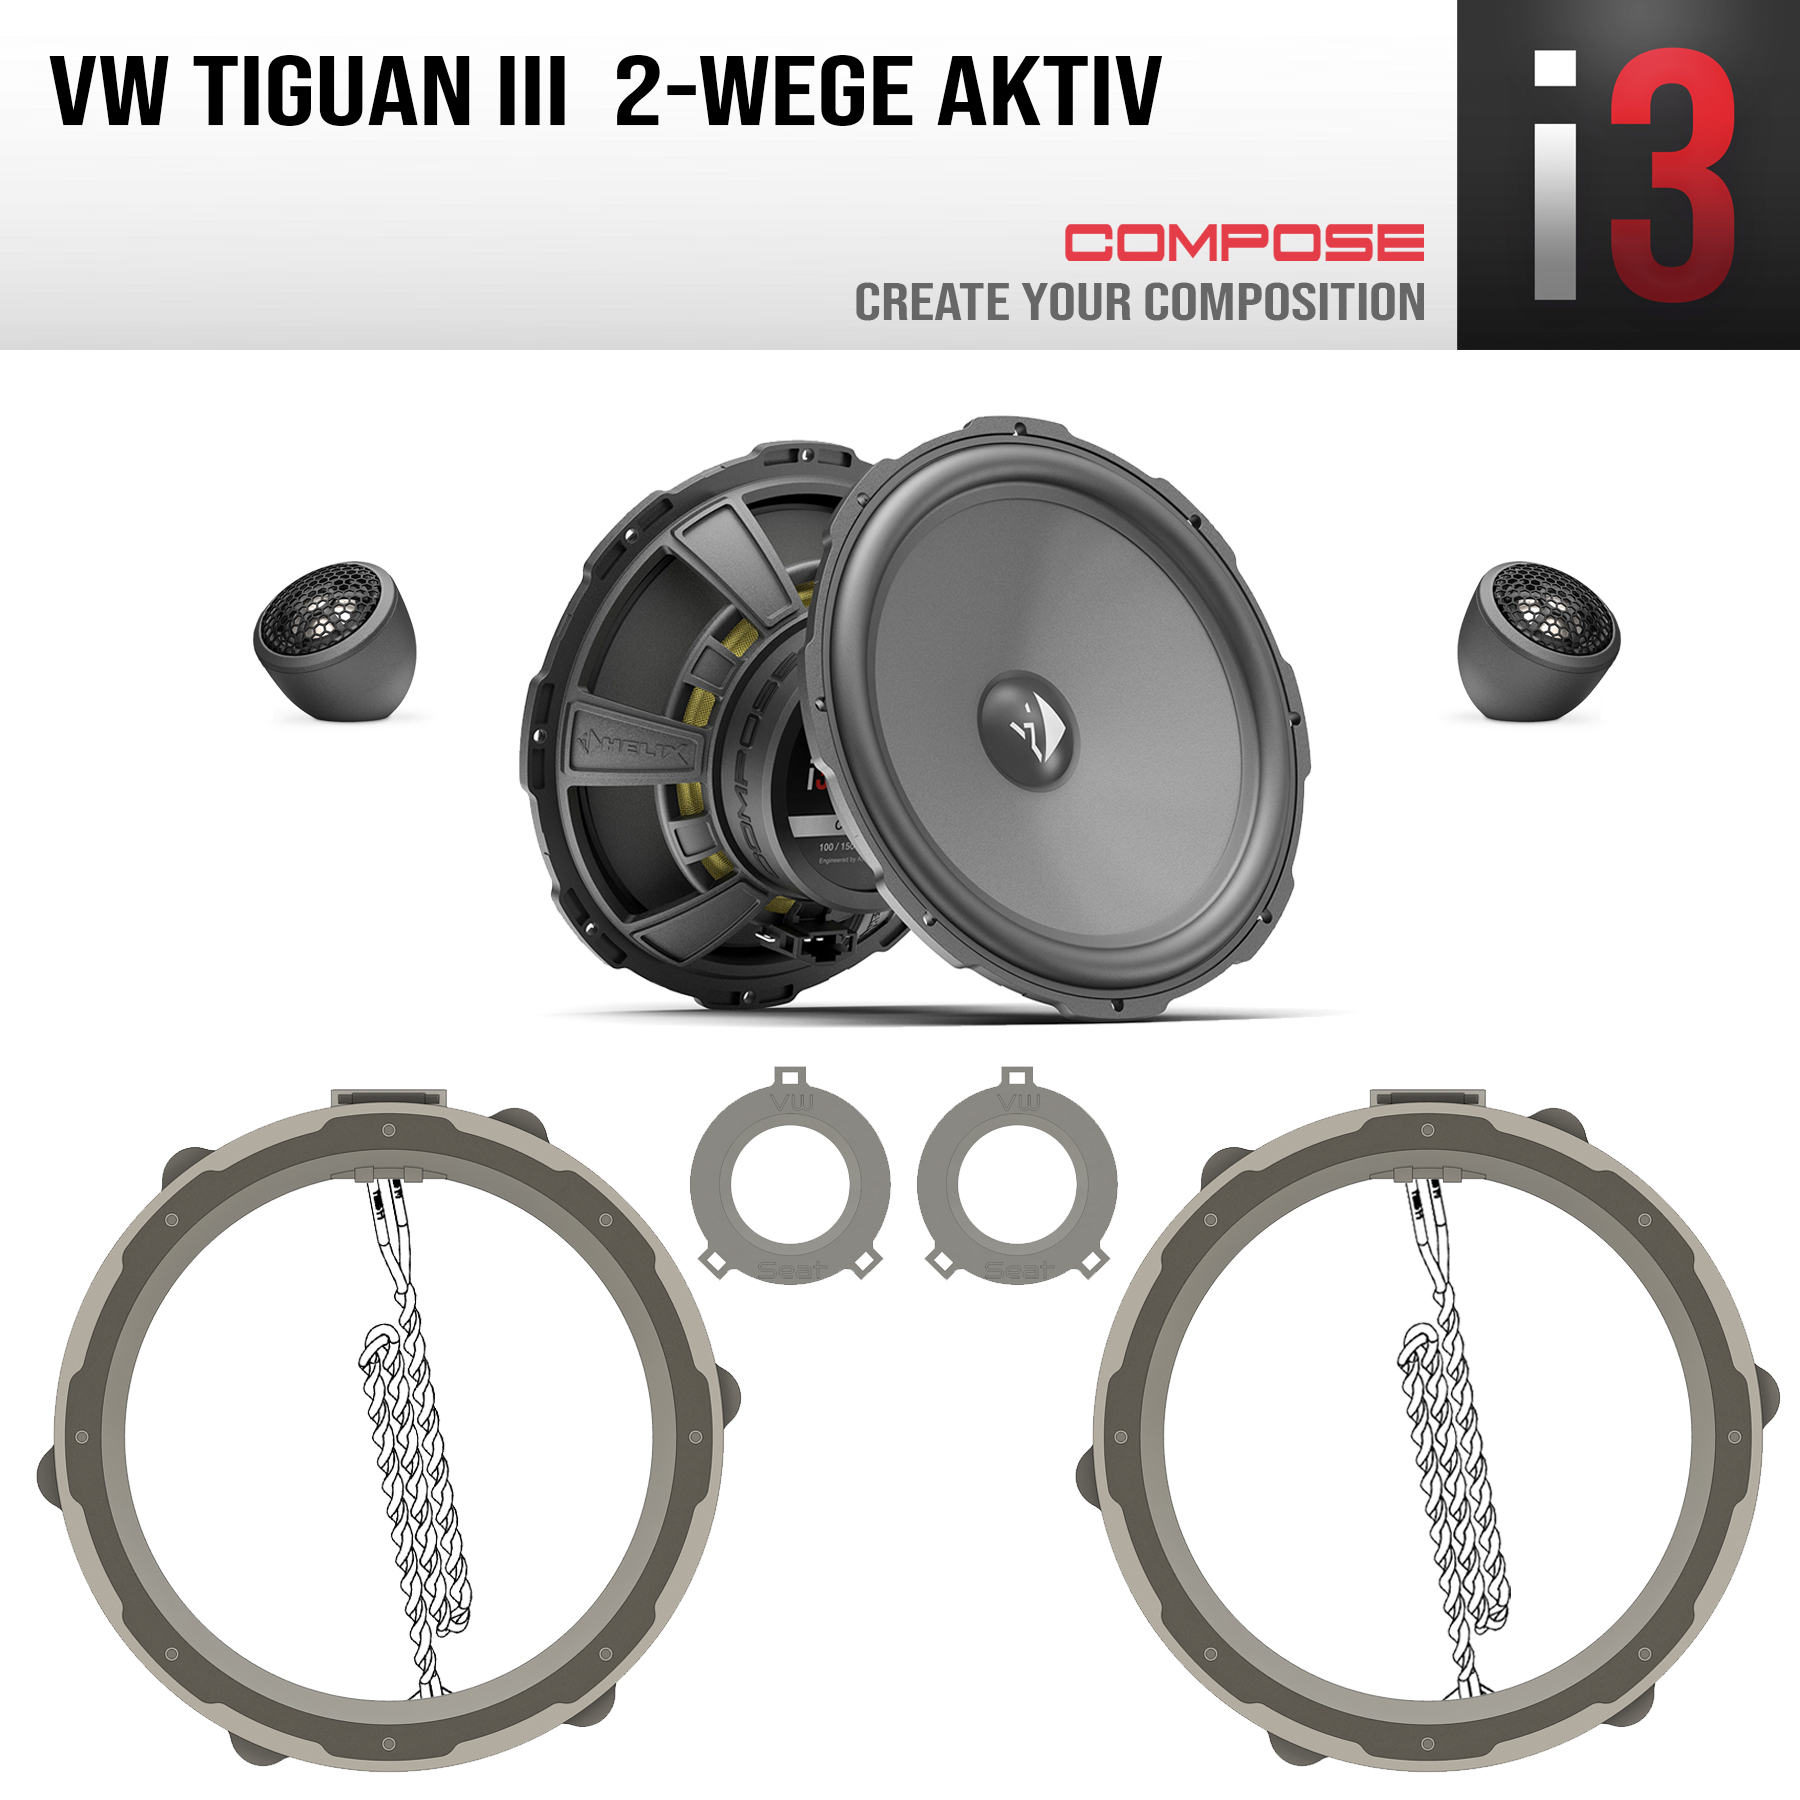 Compose Ci3 K200.2VW5 Tiguan III aktiv